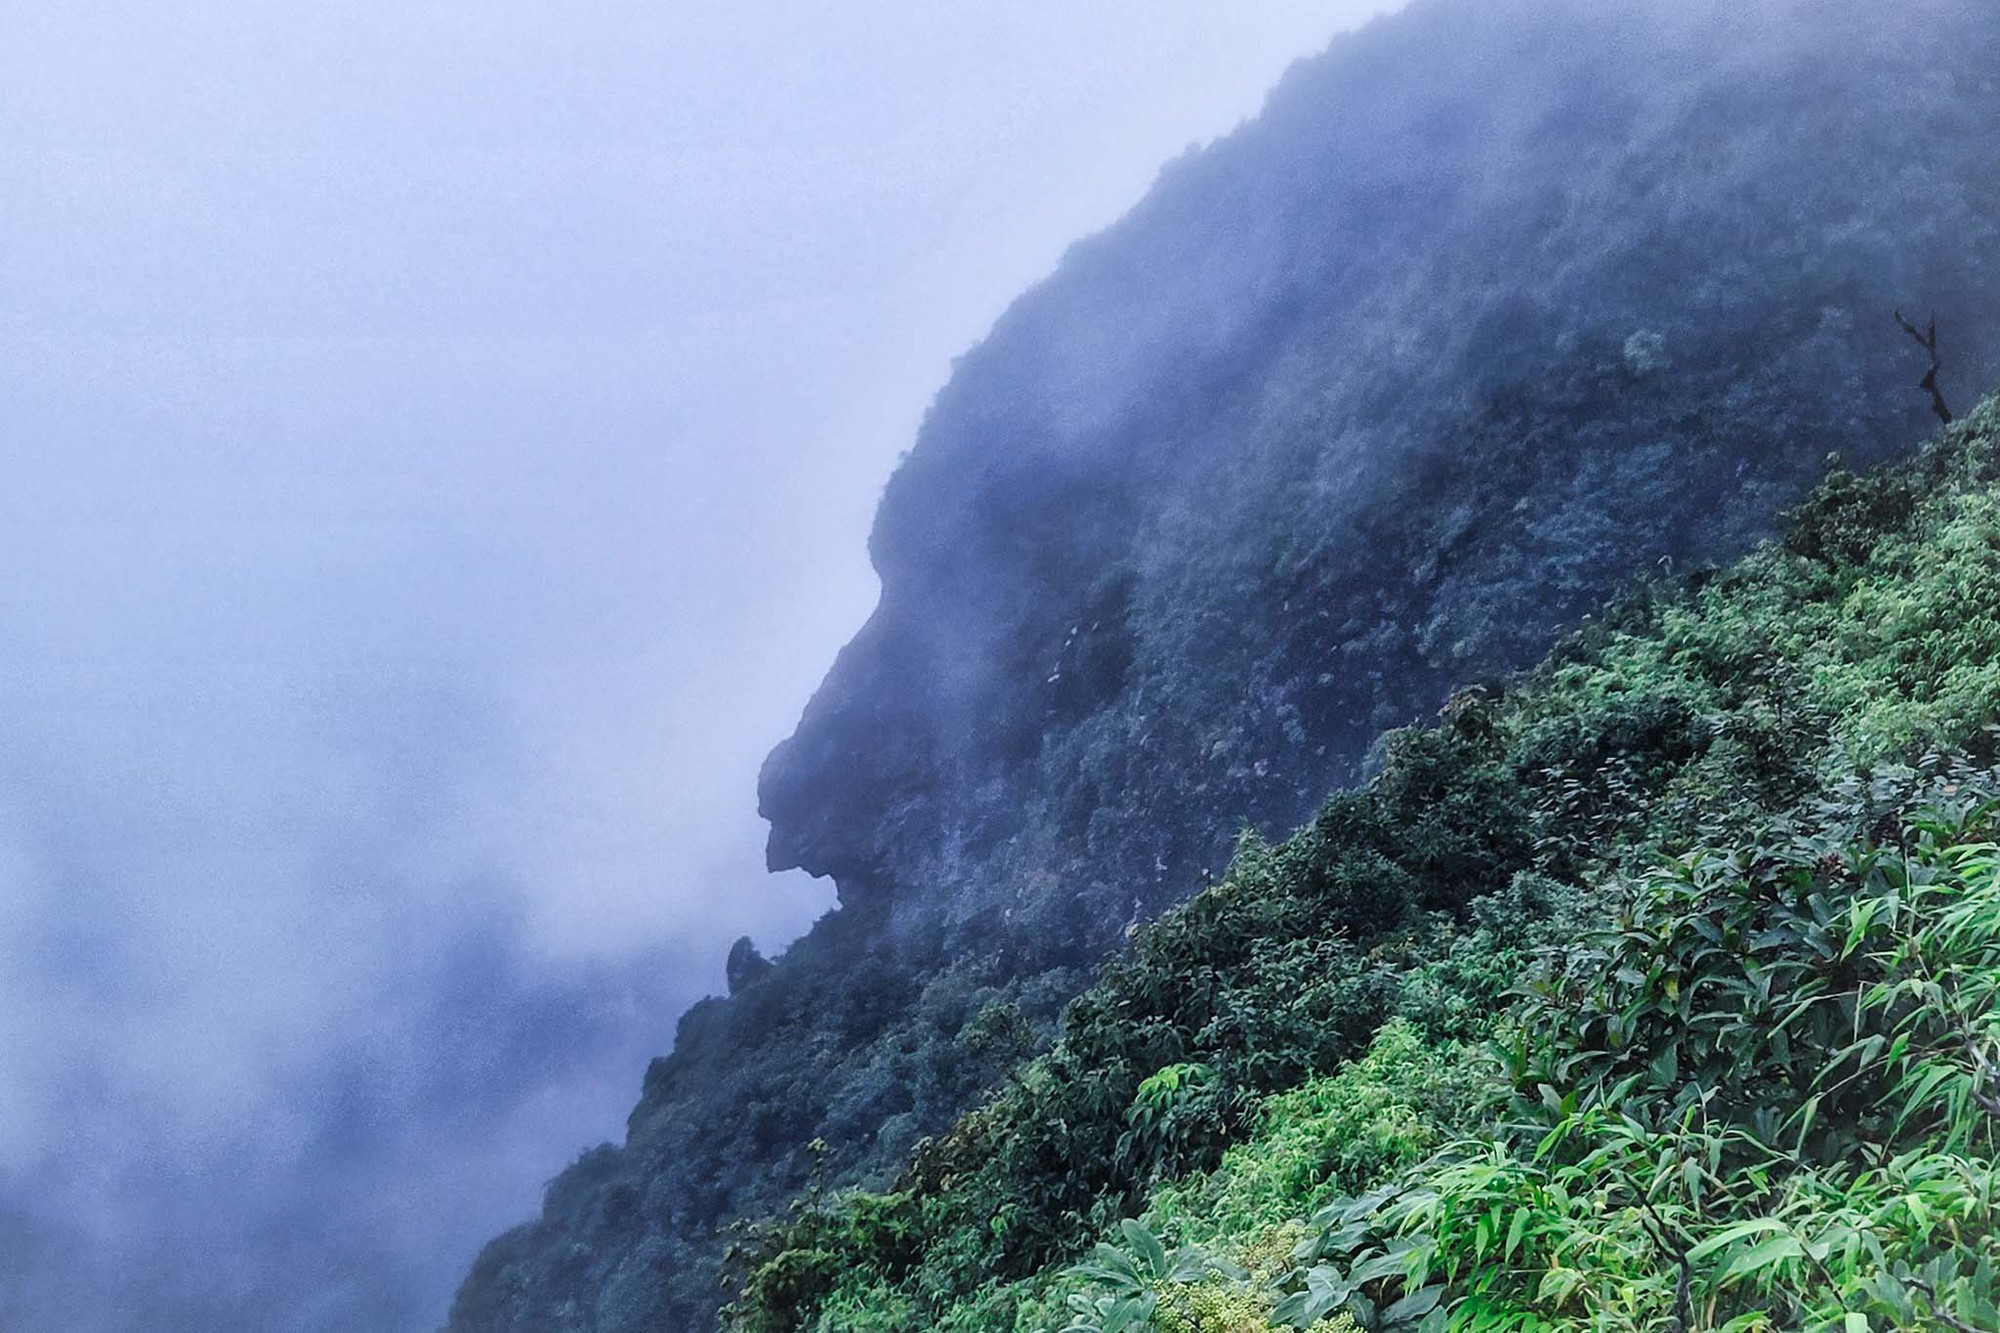 Băng rừng 2 ngày ngắm ‘quỷ núi’, săn hốc đá hình ‘trái tim’ Nhìu Cồ San-một ngọn núi cao ở Lào Cai - Ảnh 10.